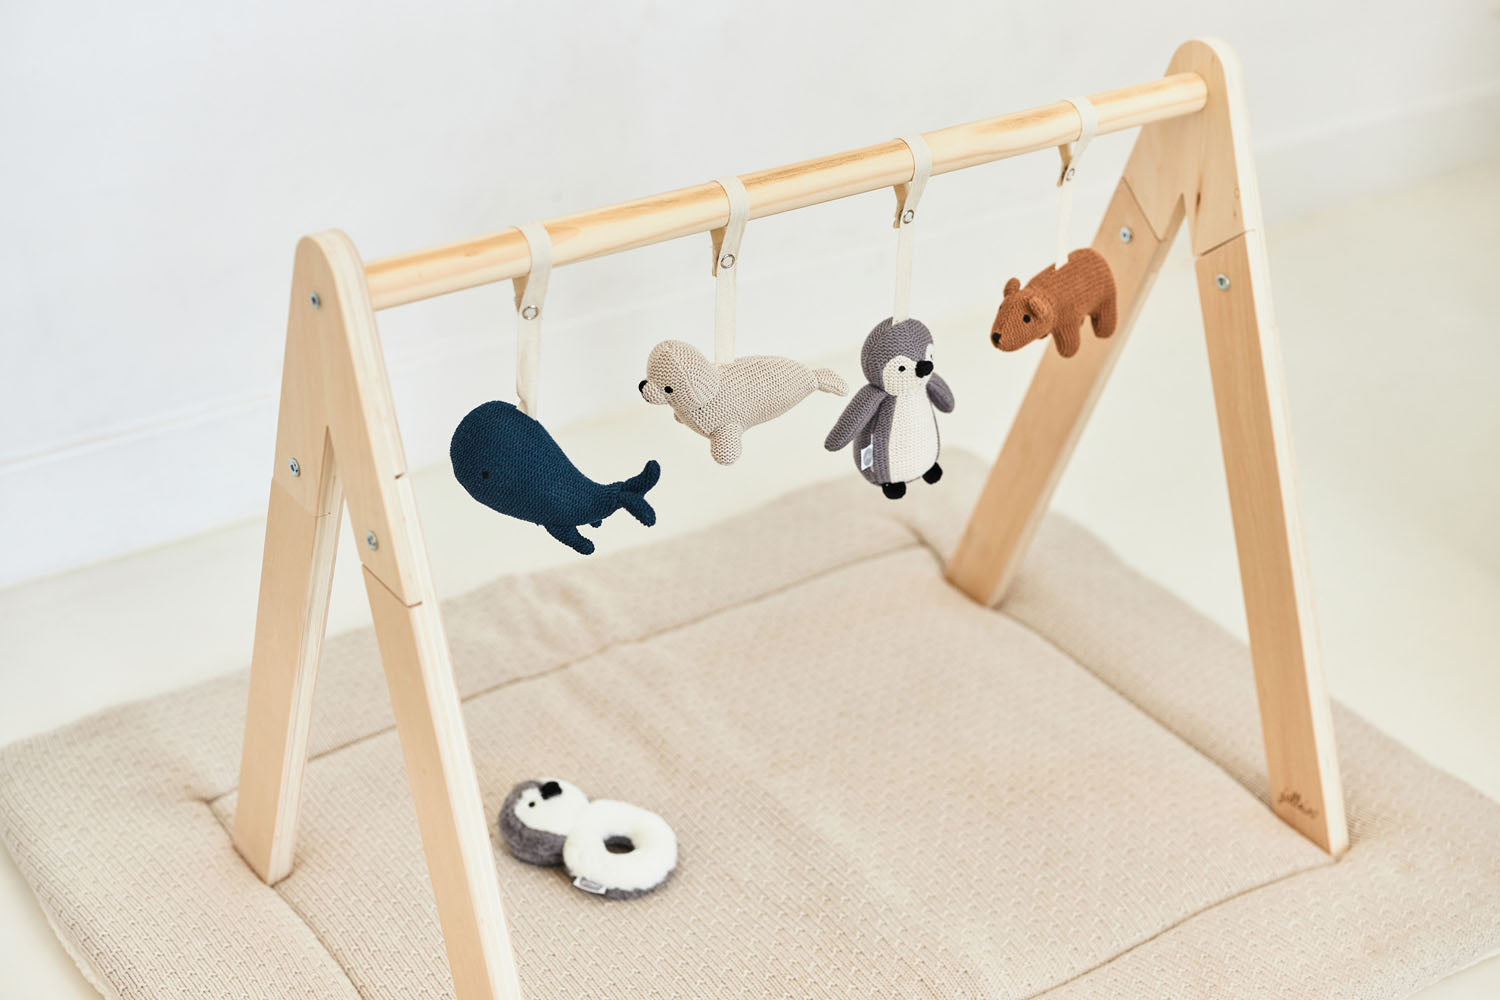 Découvrez nos tapis de jeu et arche d'éveil pour bébé sur Babykare.fr